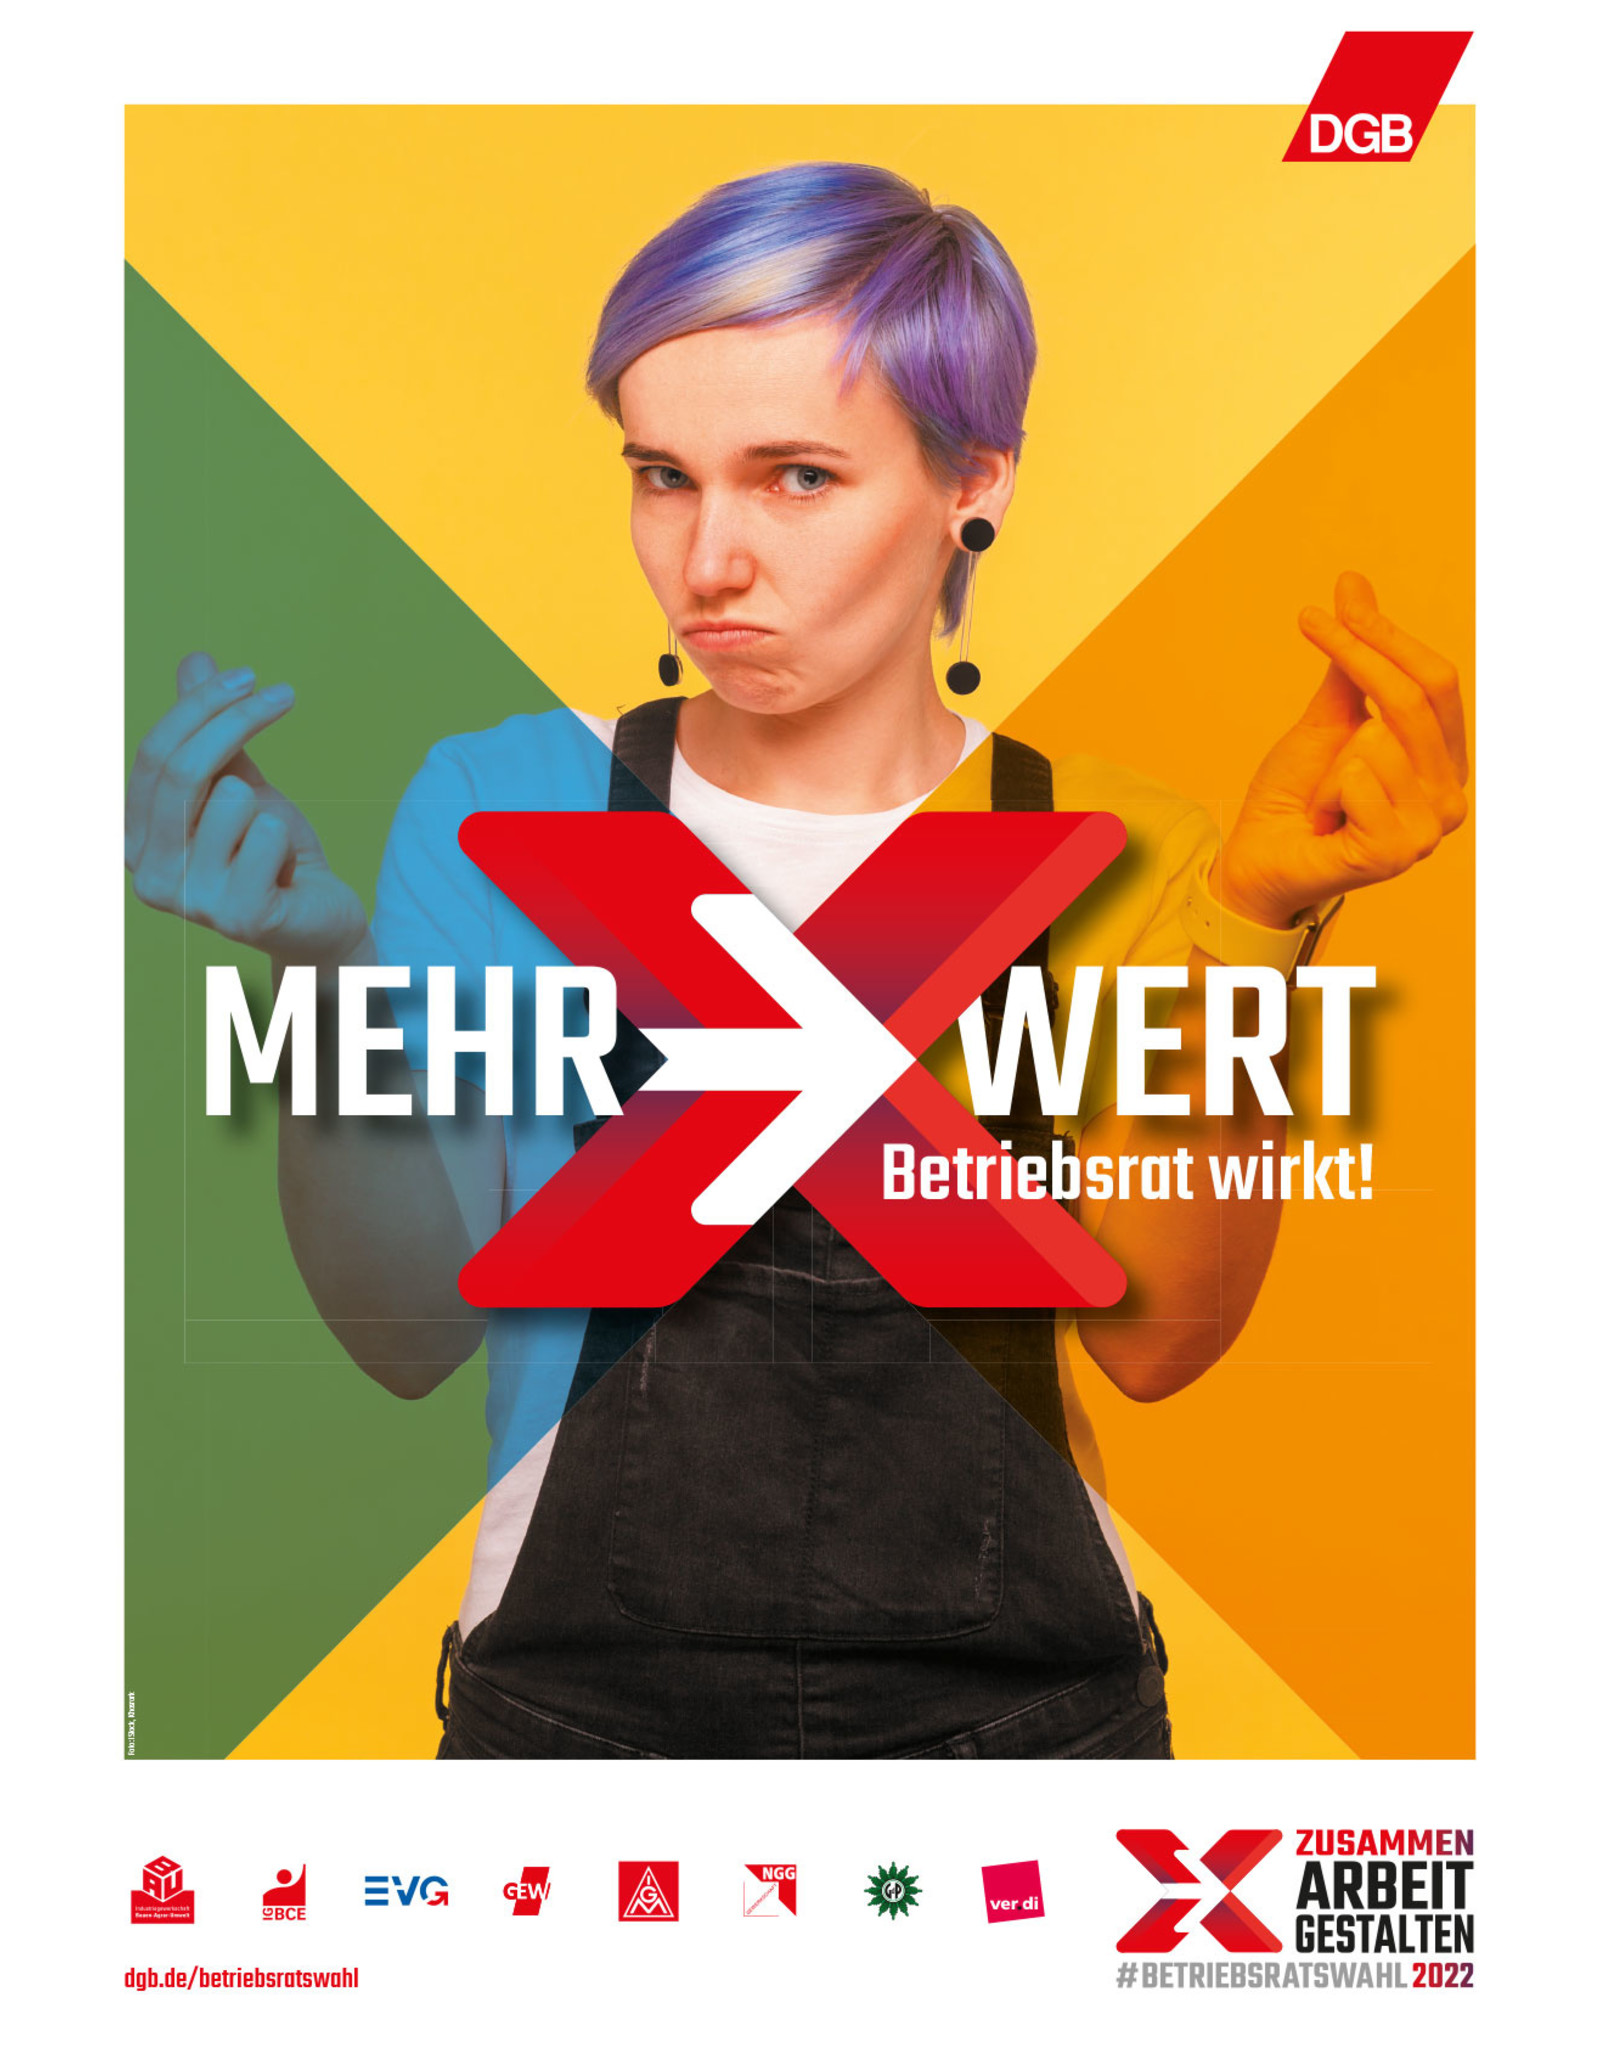 Plakat: "Mehr-Wert. Betriebsrat wirkt!"